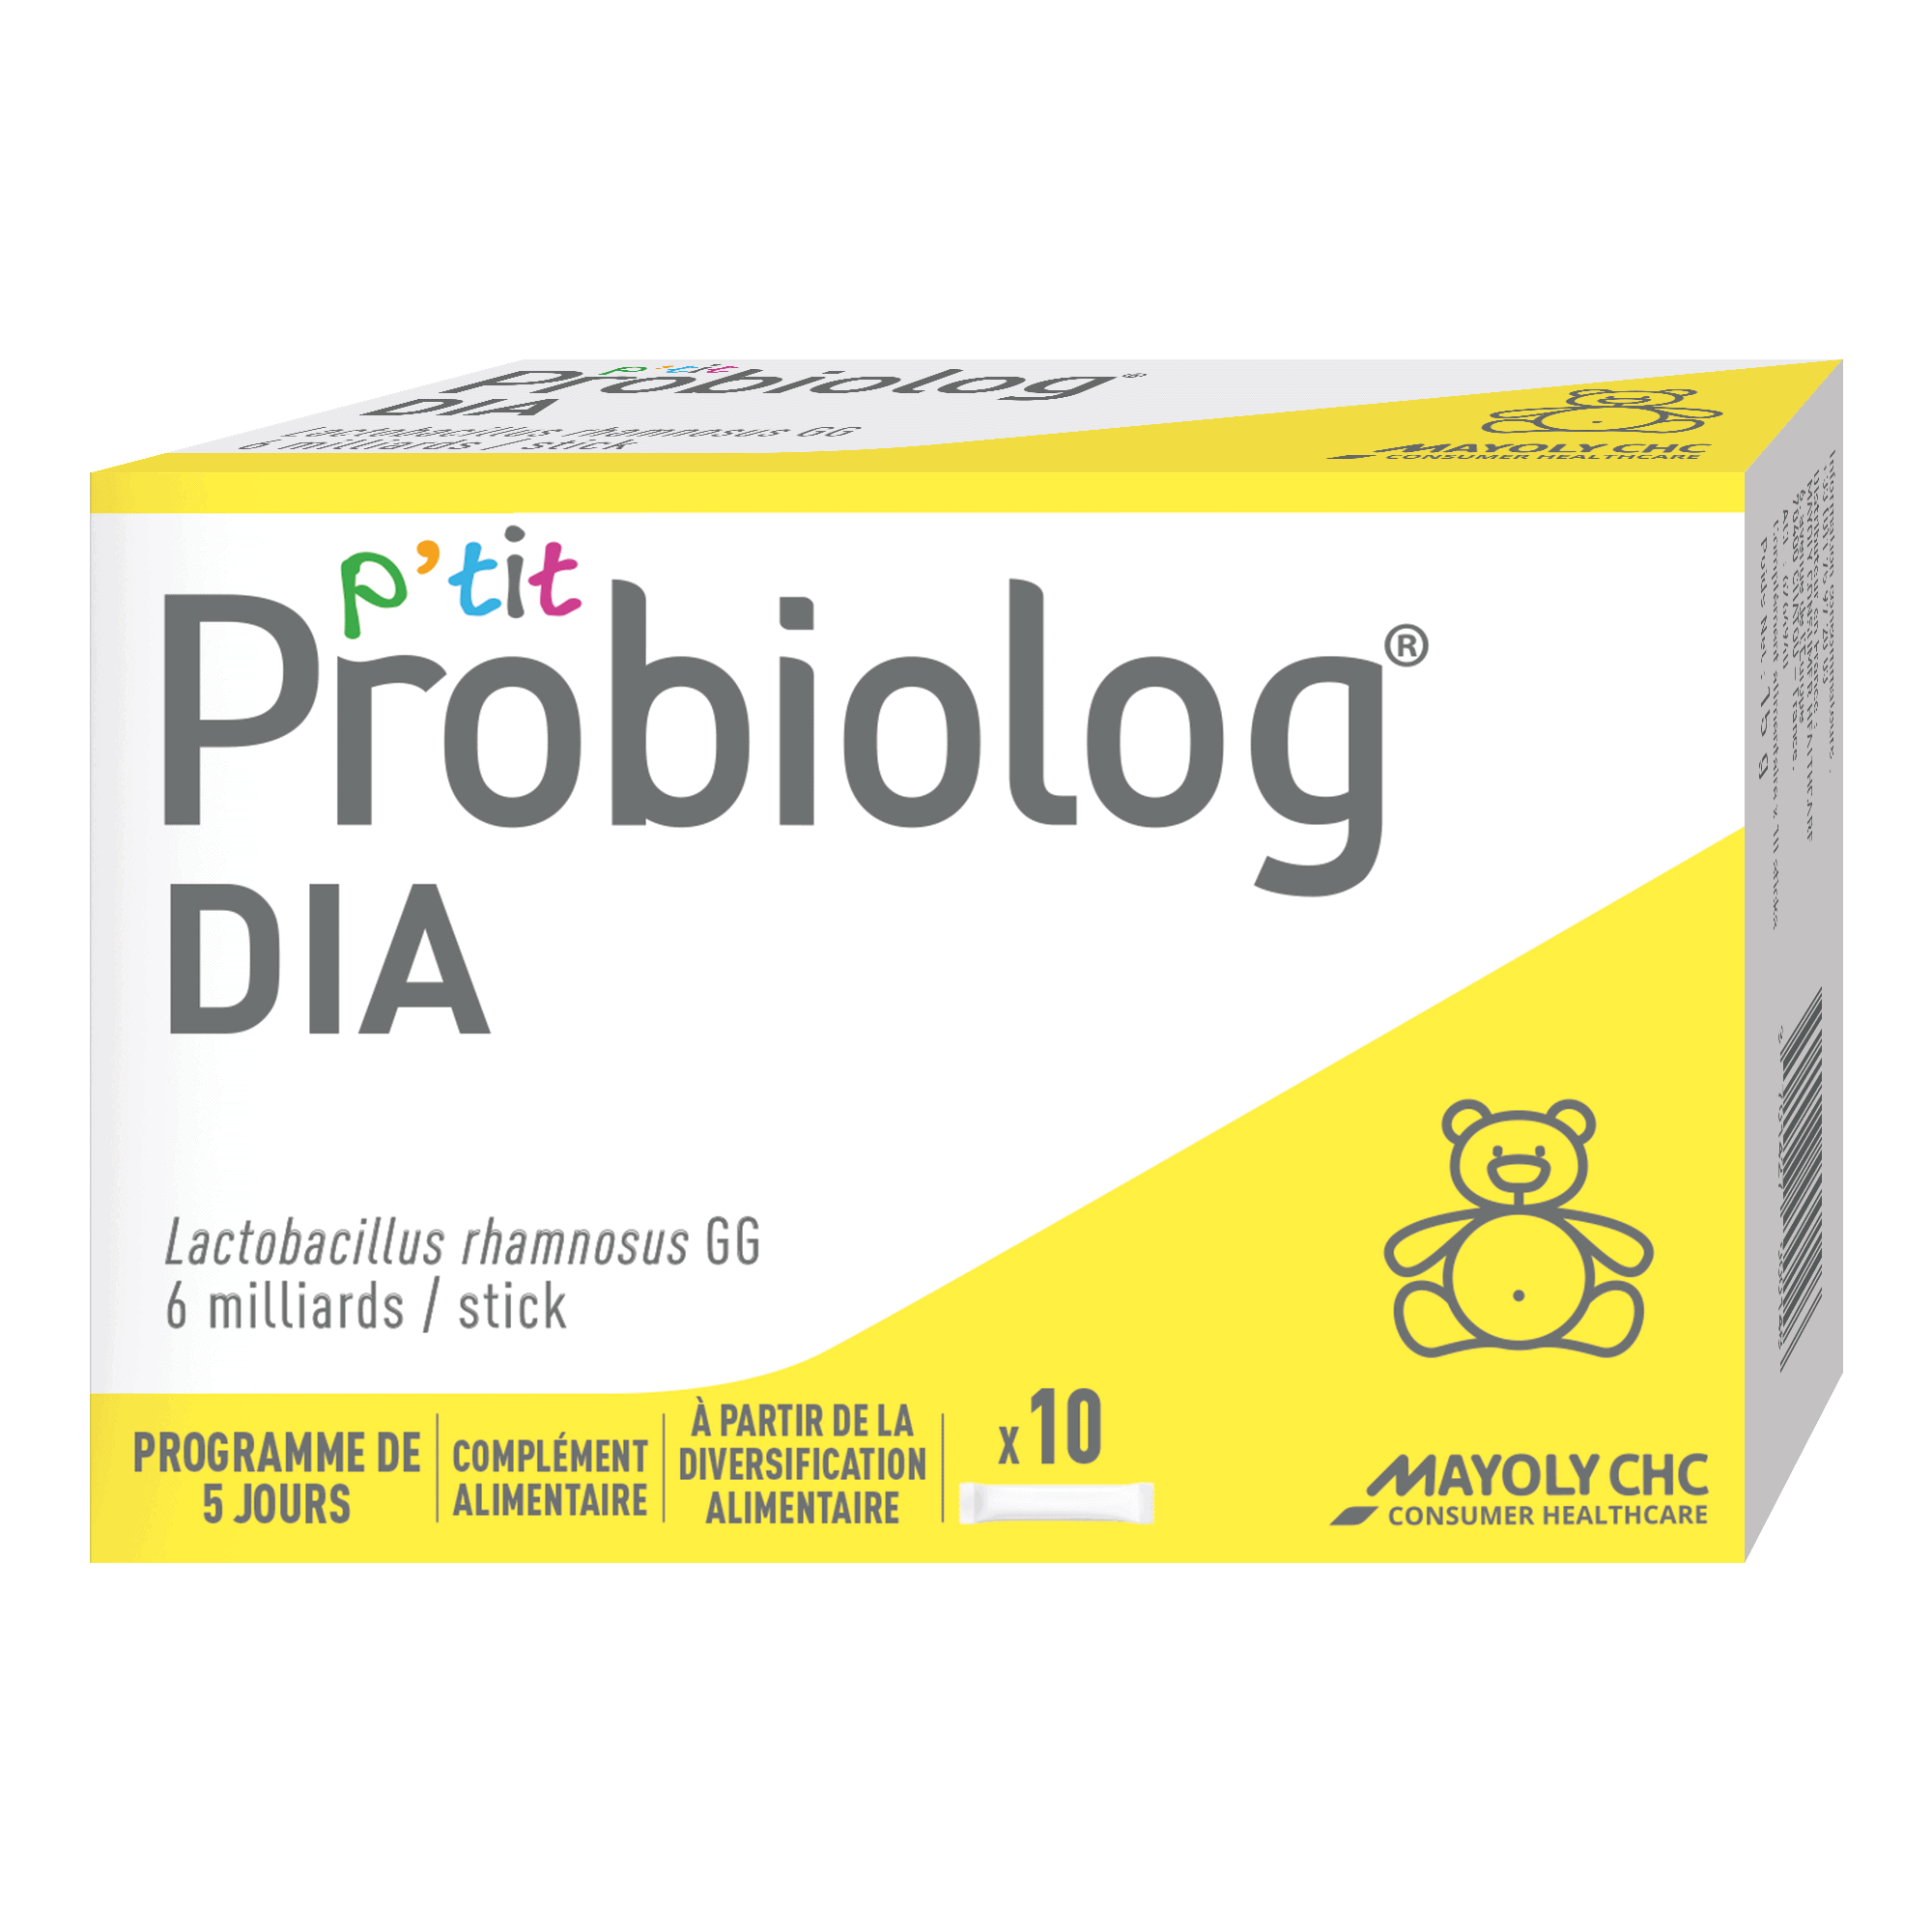 Probiolog DIA